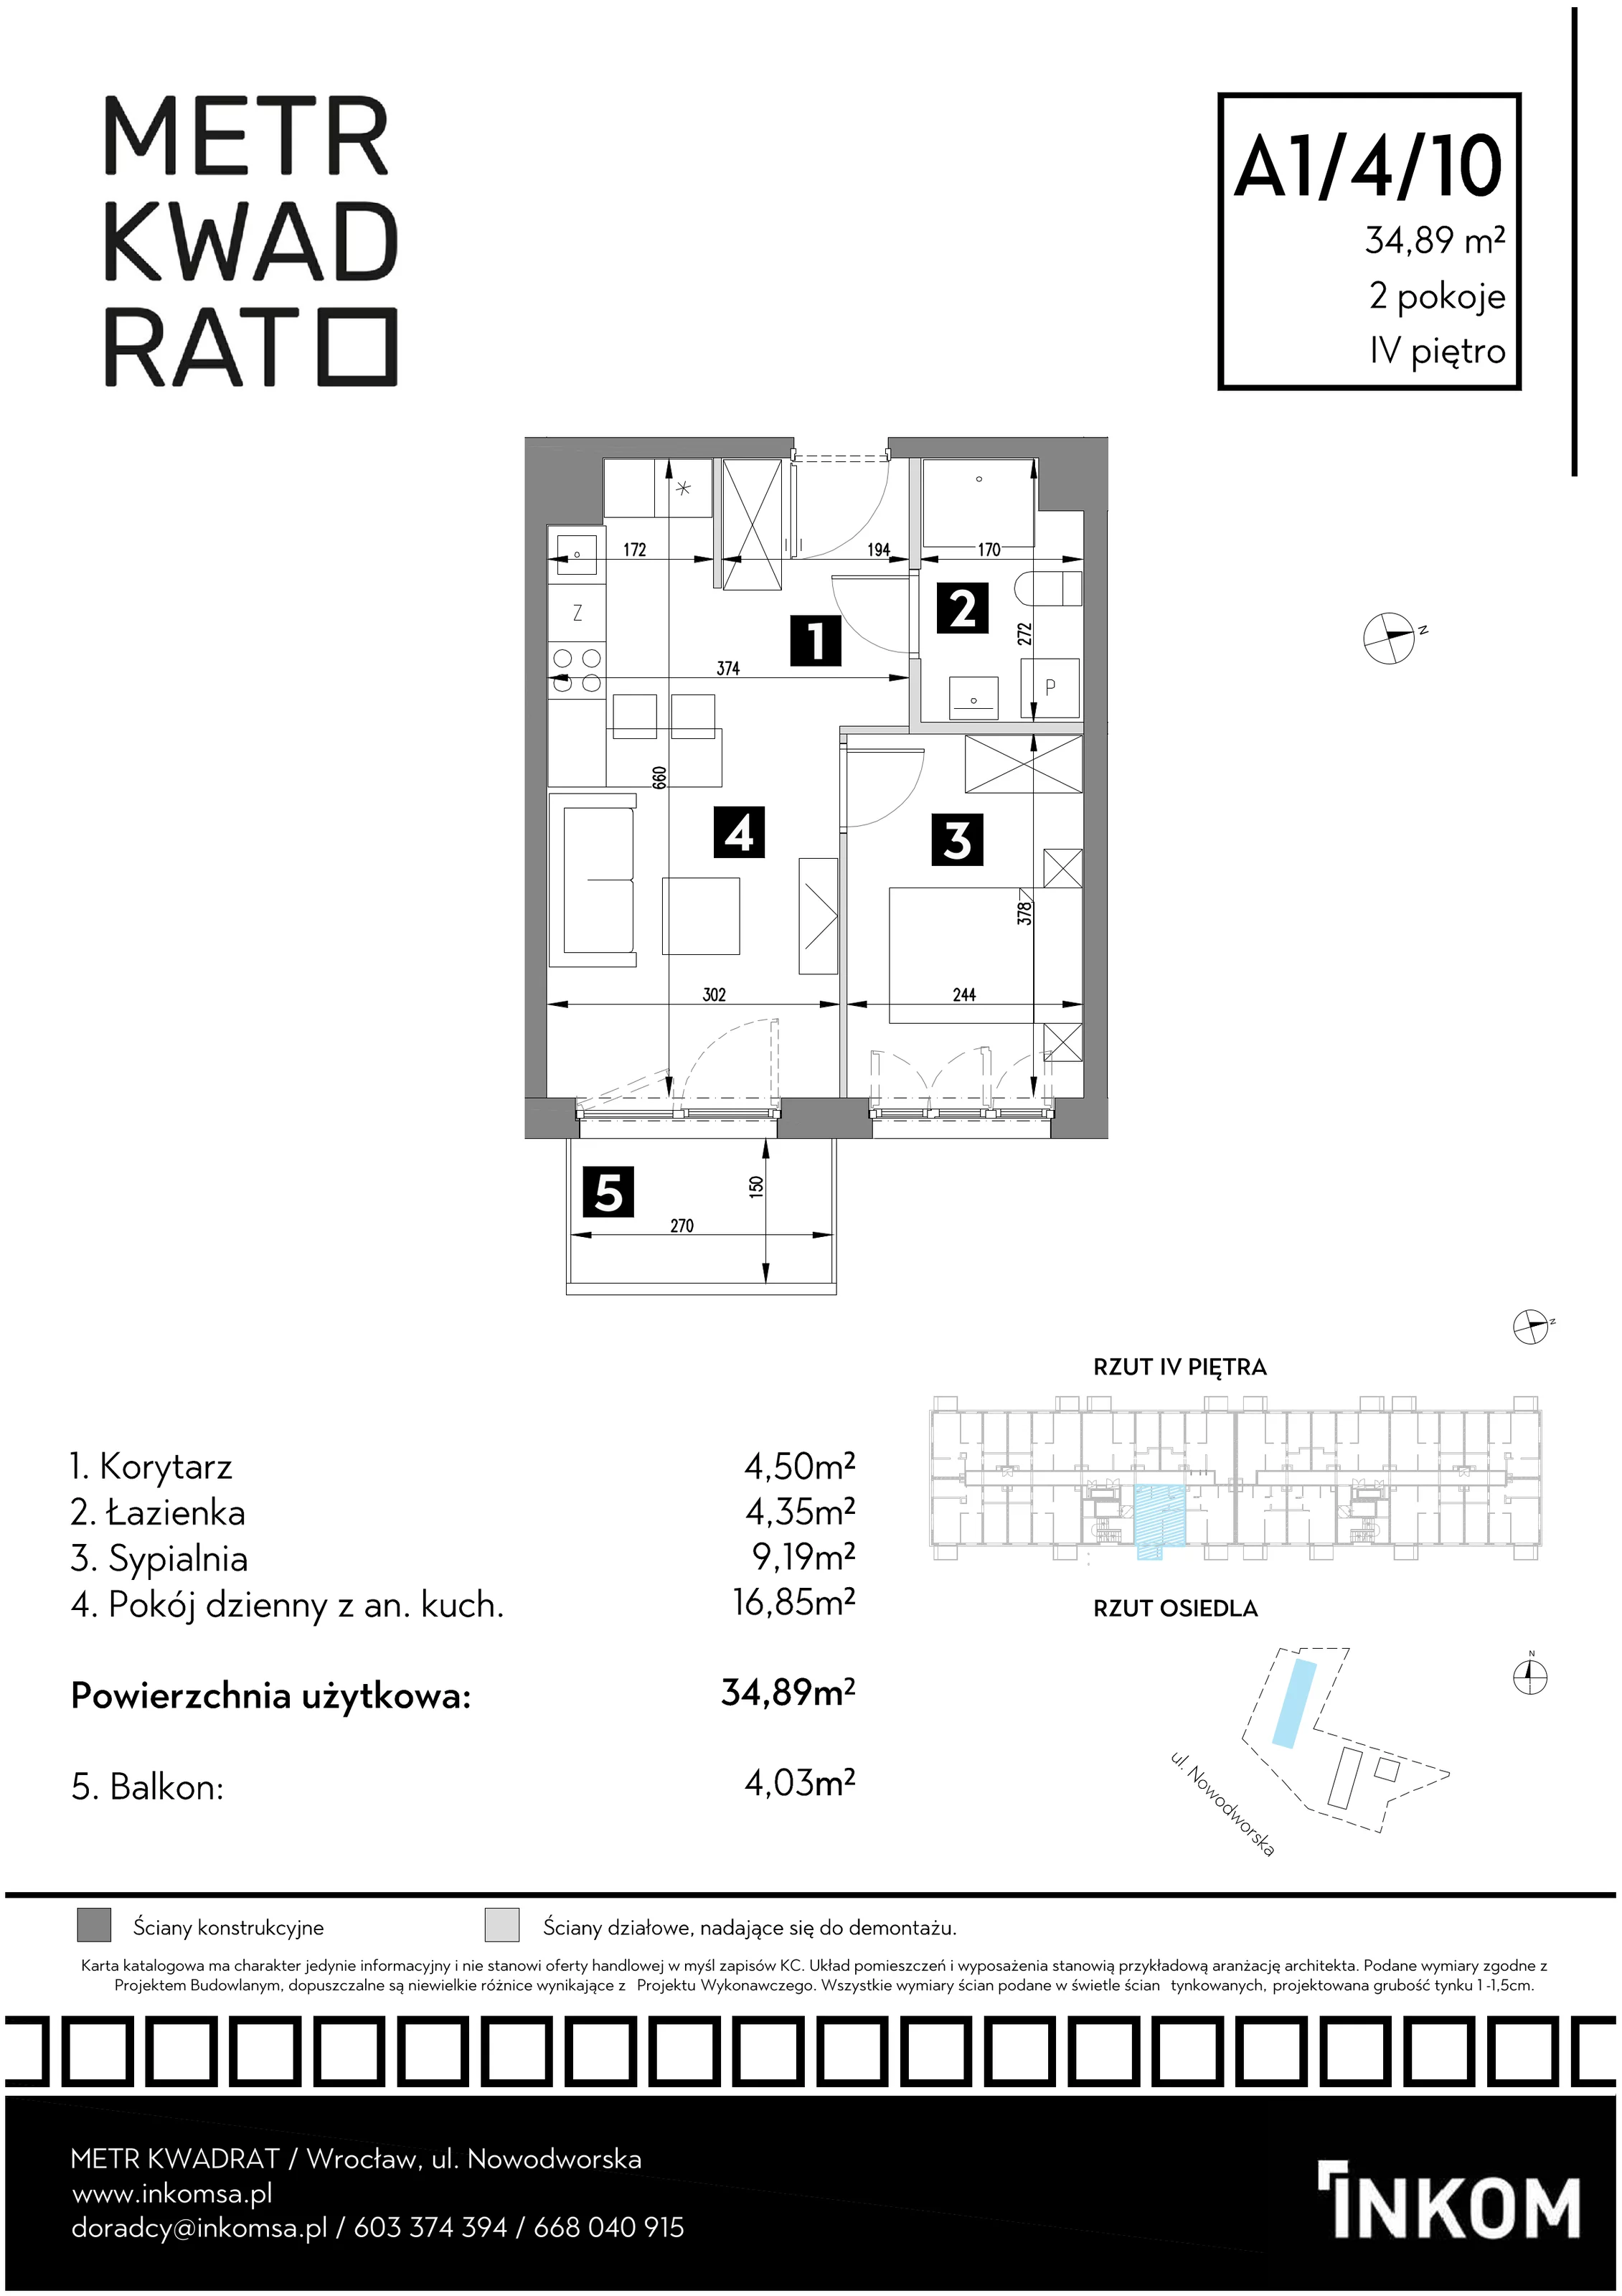 Mieszkanie 34,89 m², piętro 4, oferta nr A1/4/10, Metr Kwadrat, Wrocław, Nowy Dwór, ul. Nowodworska 17B